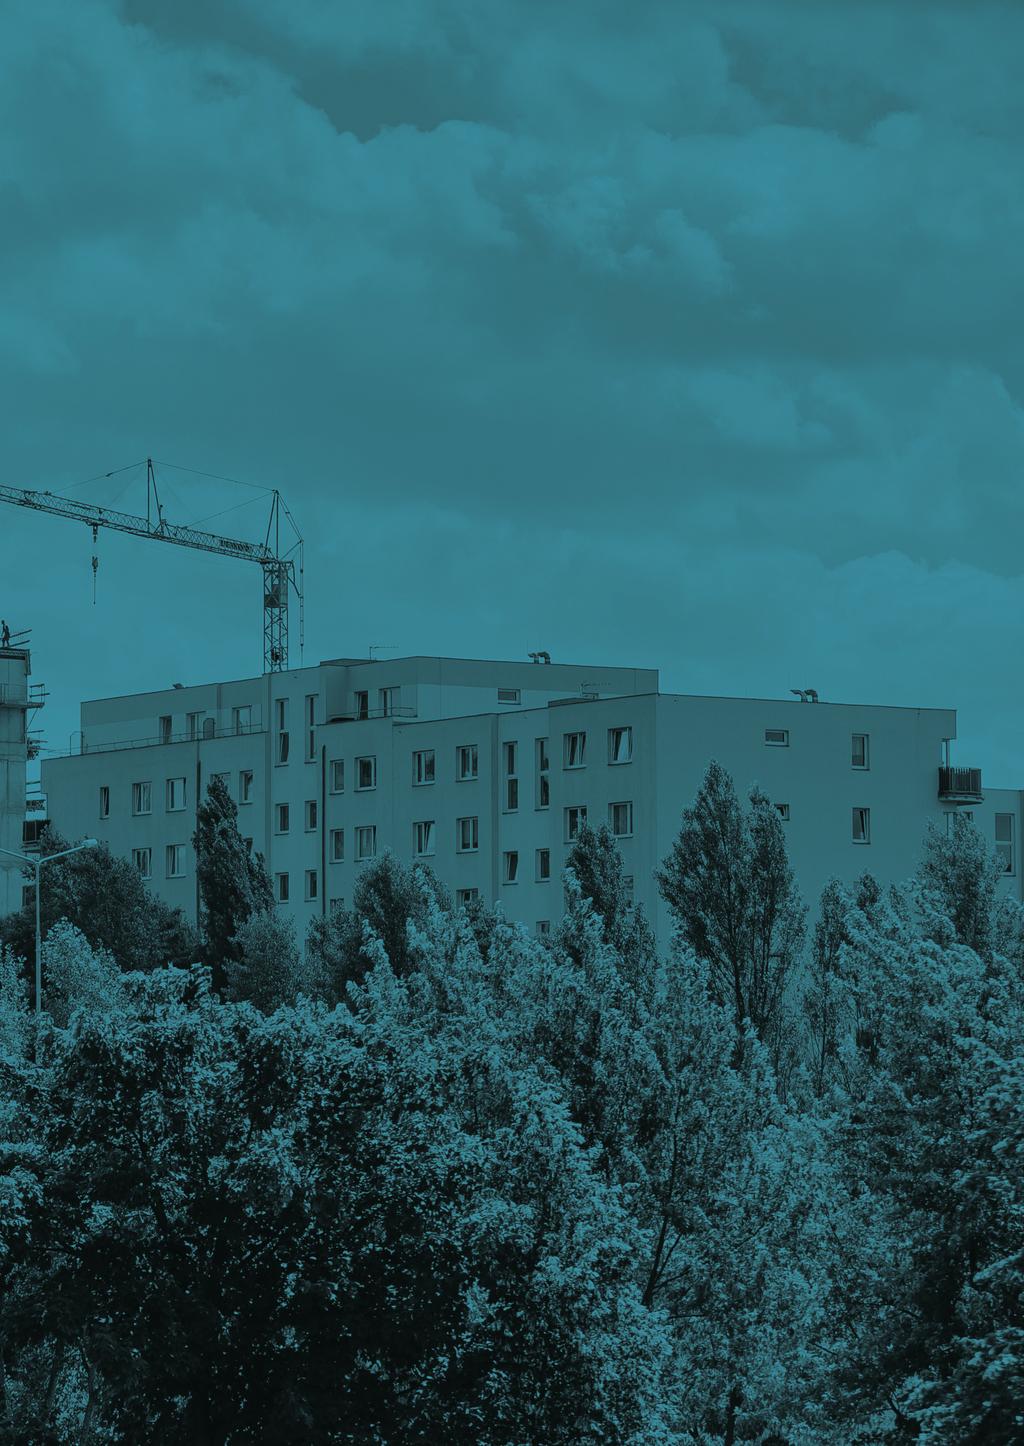 Územní analýza aktuálních developerských projektů výstavby bytových domů v Praze [2018]